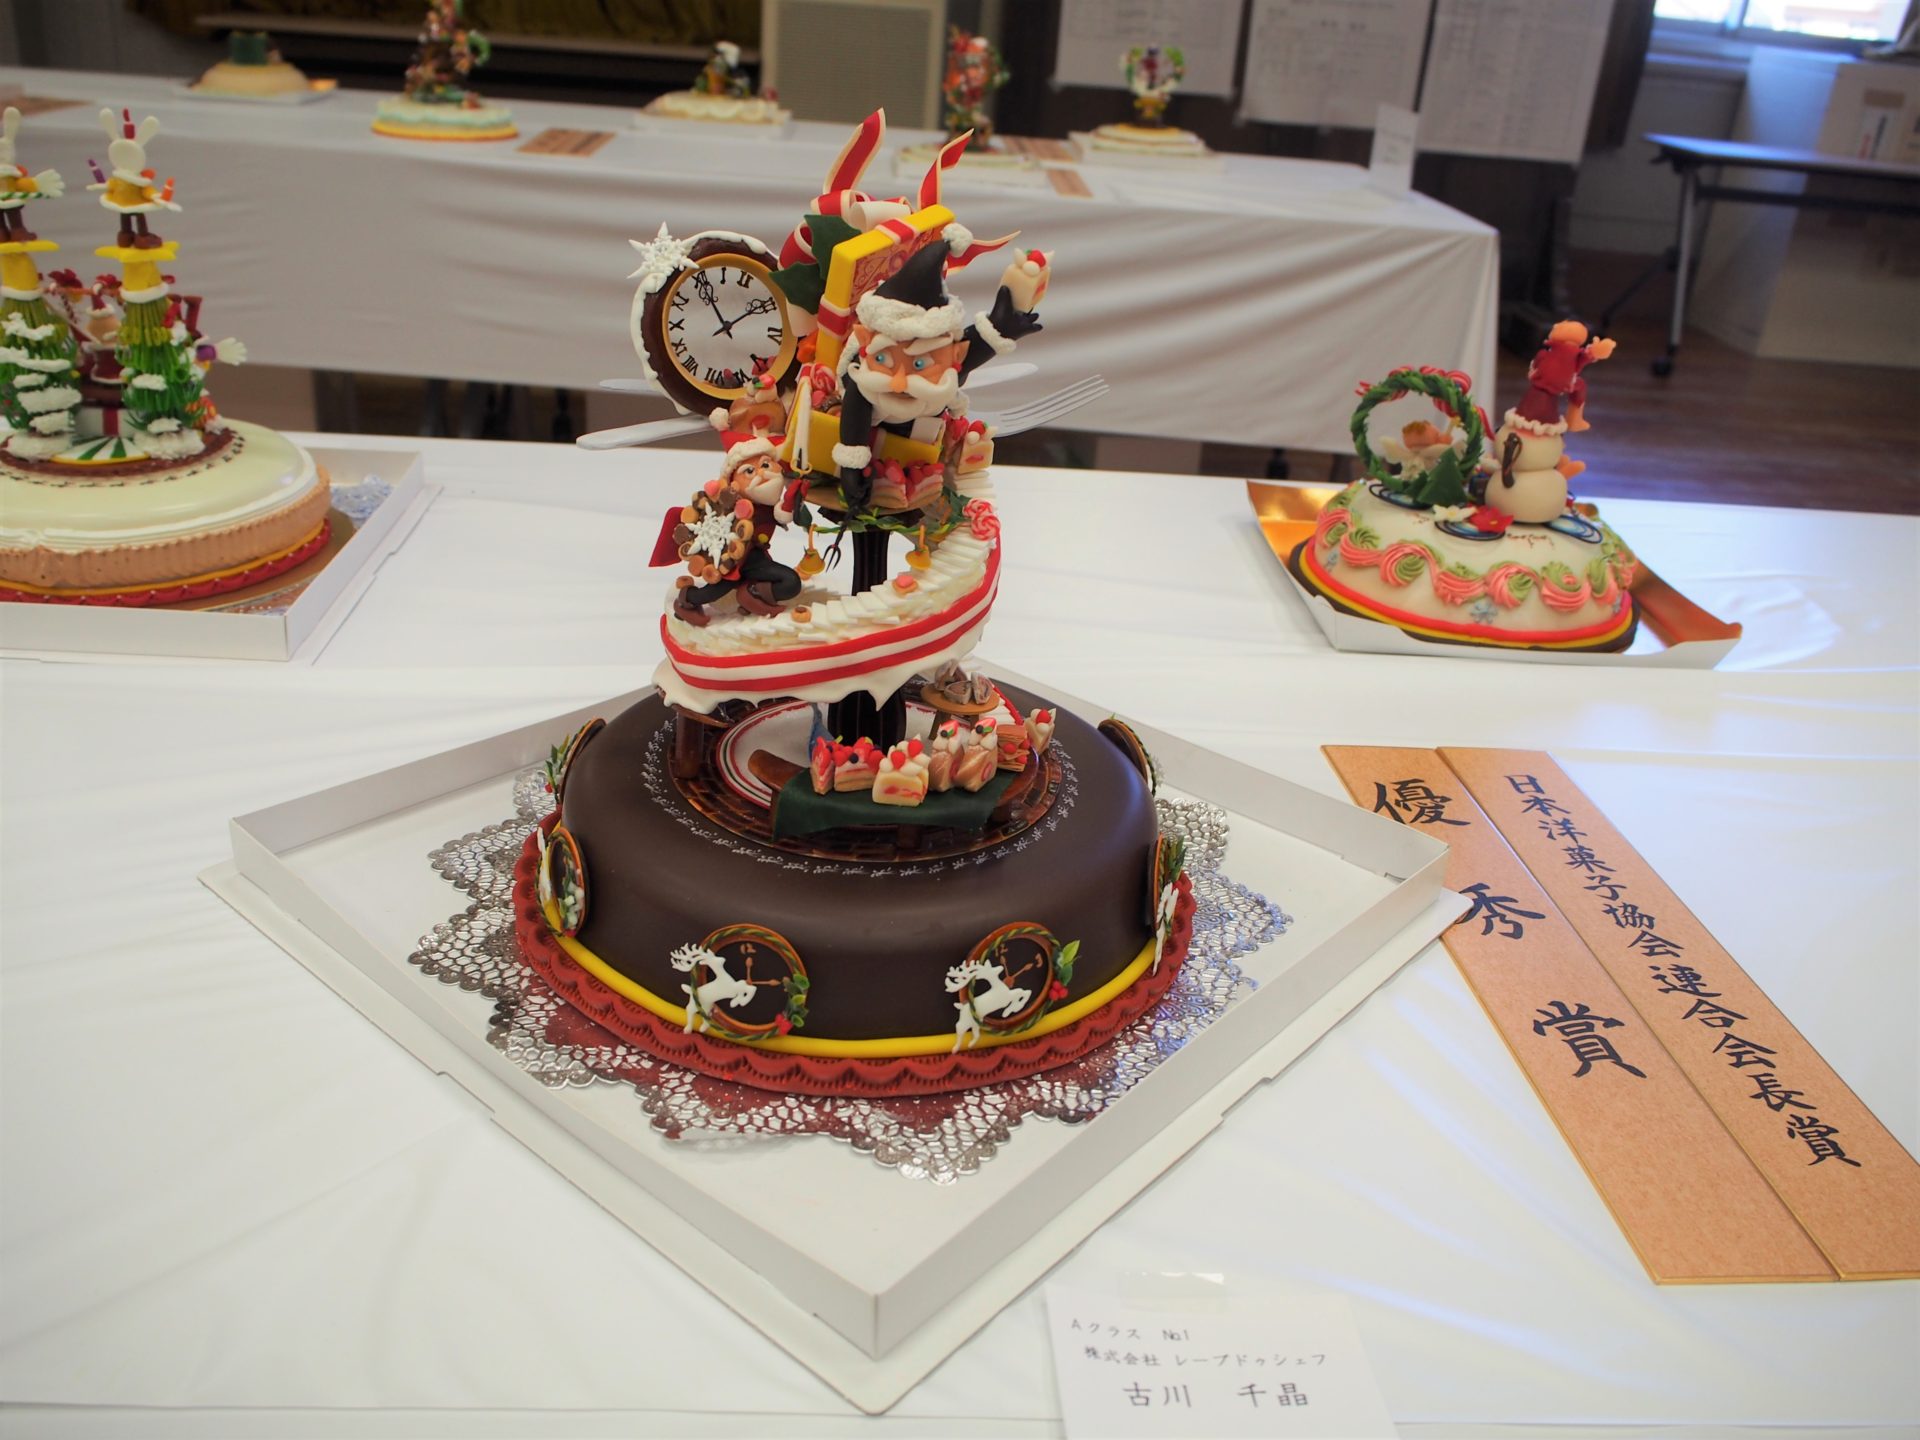 第61回クリスマスケーキコンテスト 入賞者発表 一般社団法人 兵庫県洋菓子協会